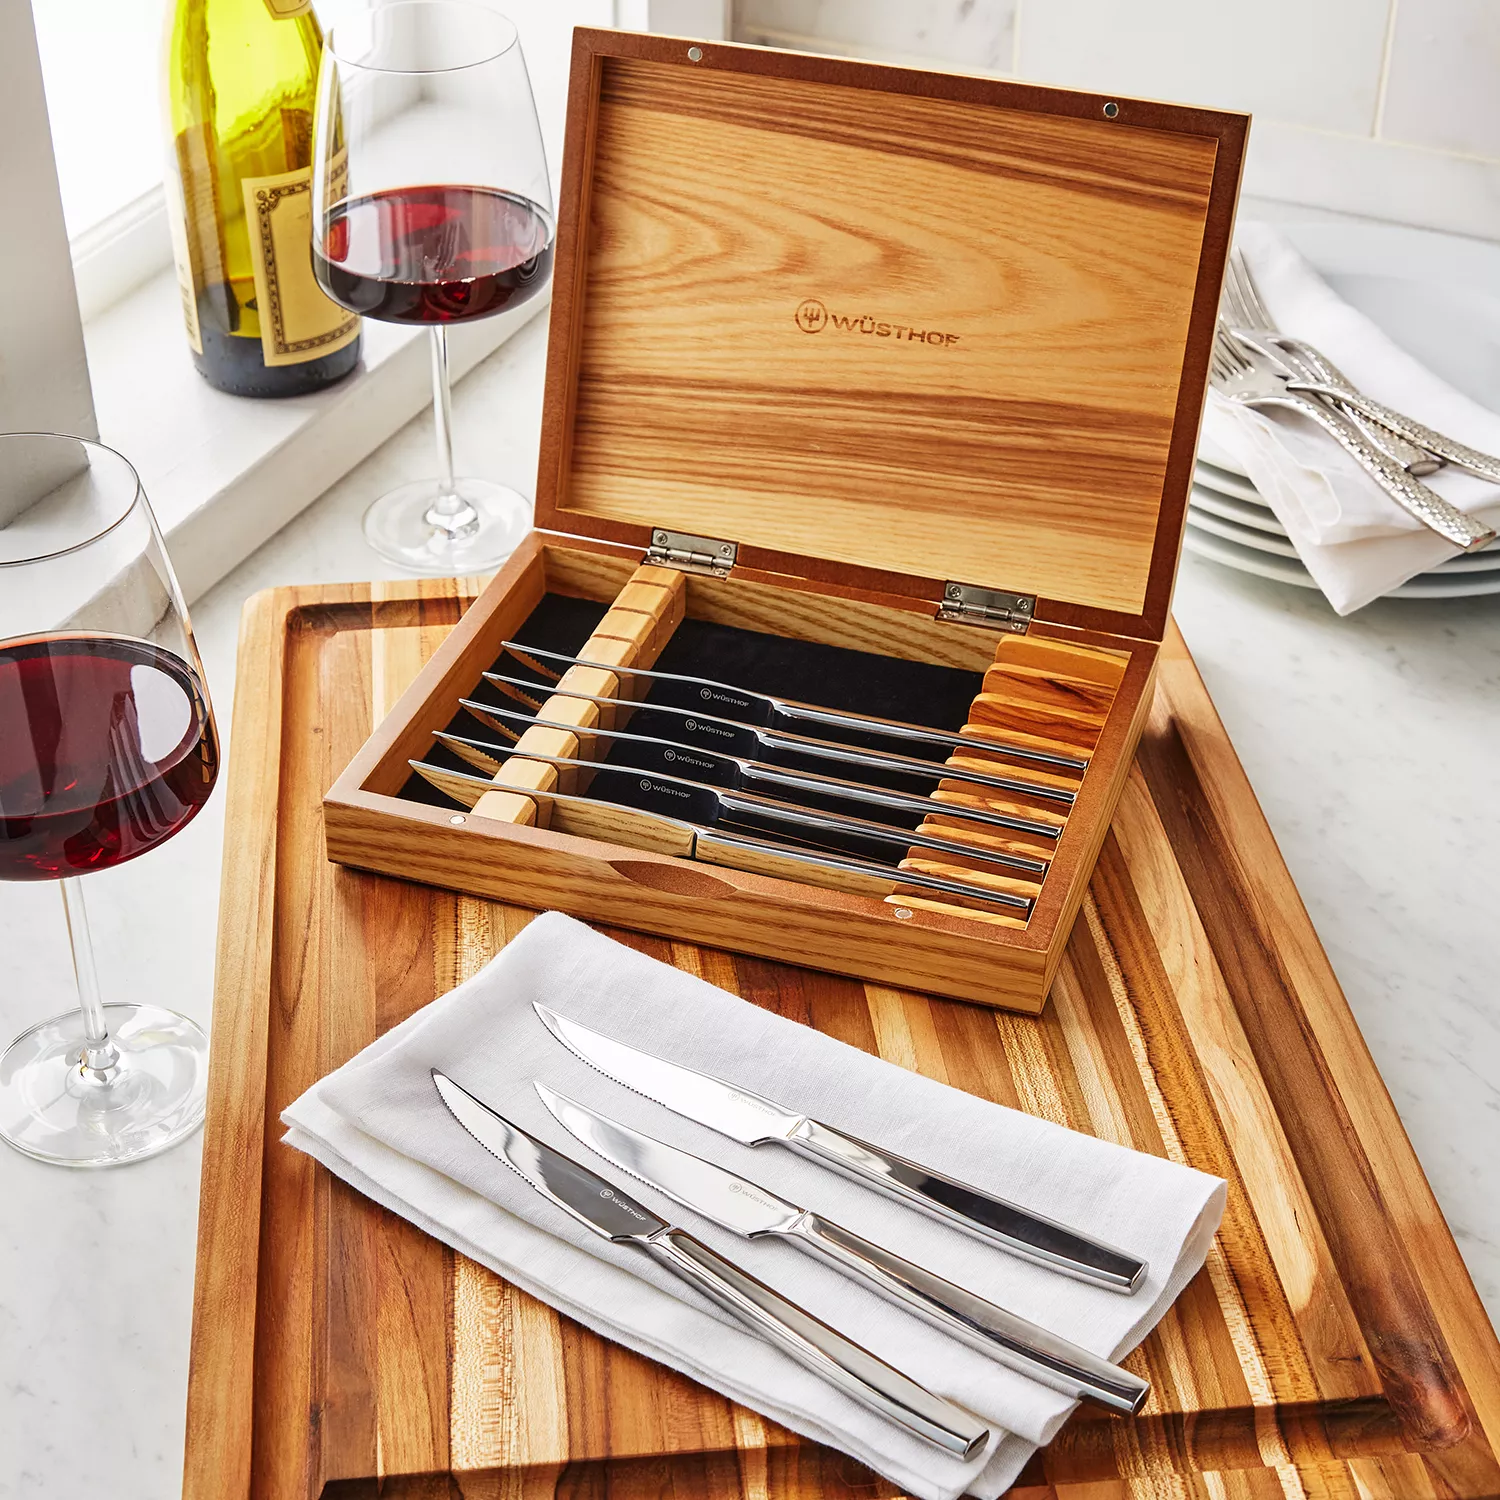 ZWILLING Porterhouse 4-pc Steak Knife Set in Beechwood Box, 4-pc - Kroger